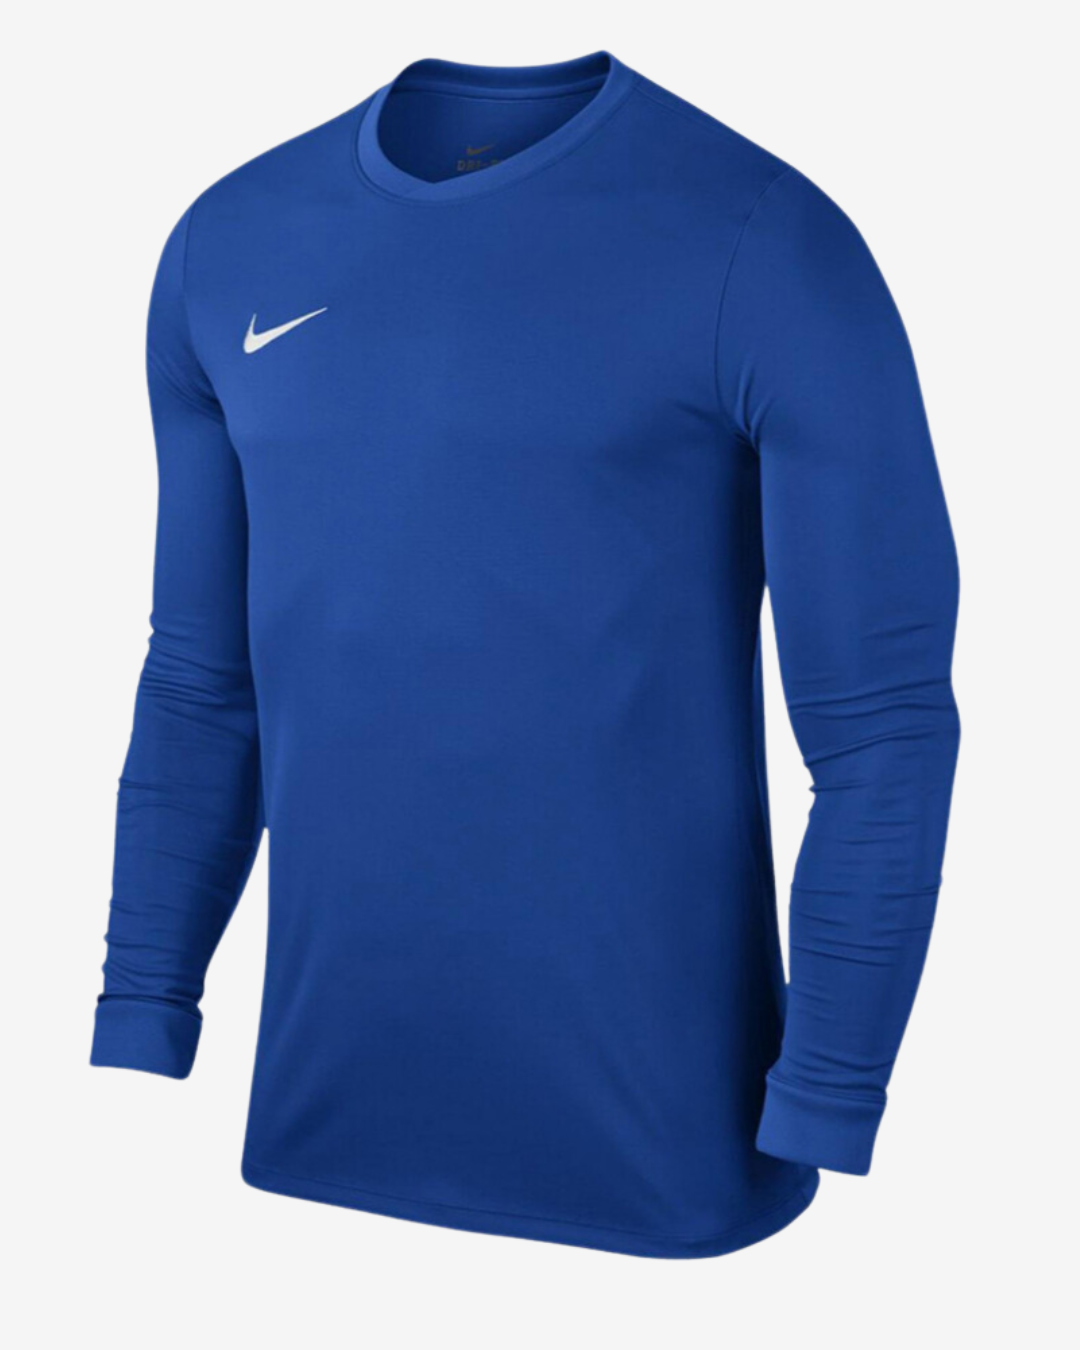 Nike Dri-fit park 7 langærmet t-shirt - Blå - Str. XXL - Modish.dk